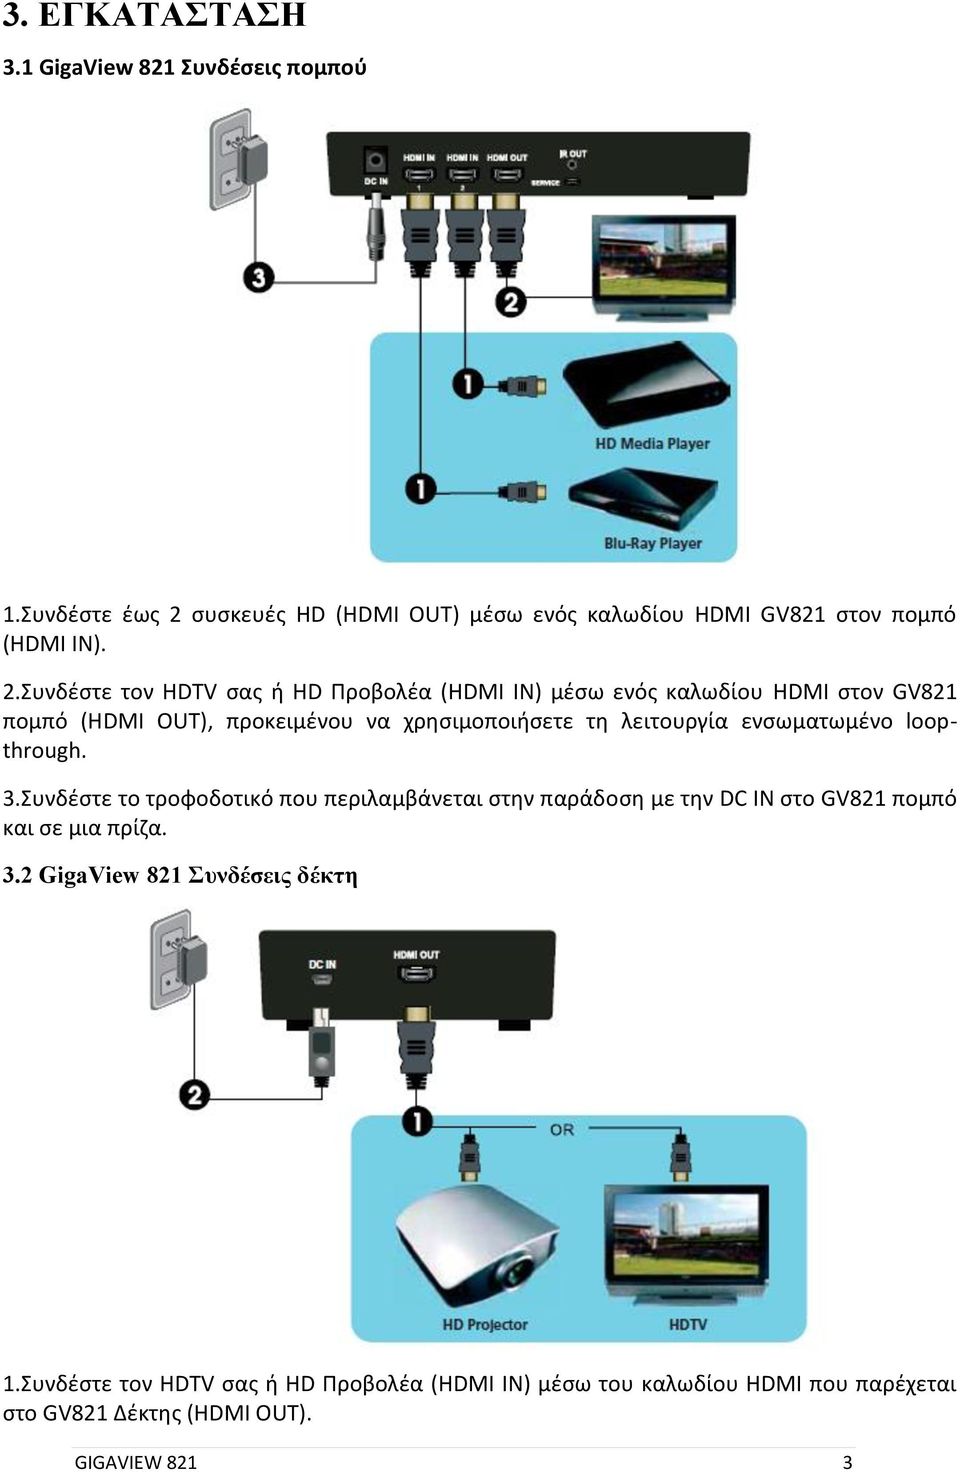 Συνδέστε τον HDTV σας ή HD Προβολέα (HDMI IN) μέσω ενός καλωδίου HDMI στον GV821 πομπό (HDMI OUT), προκειμένου να χρησιμοποιήσετε τη λειτουργία